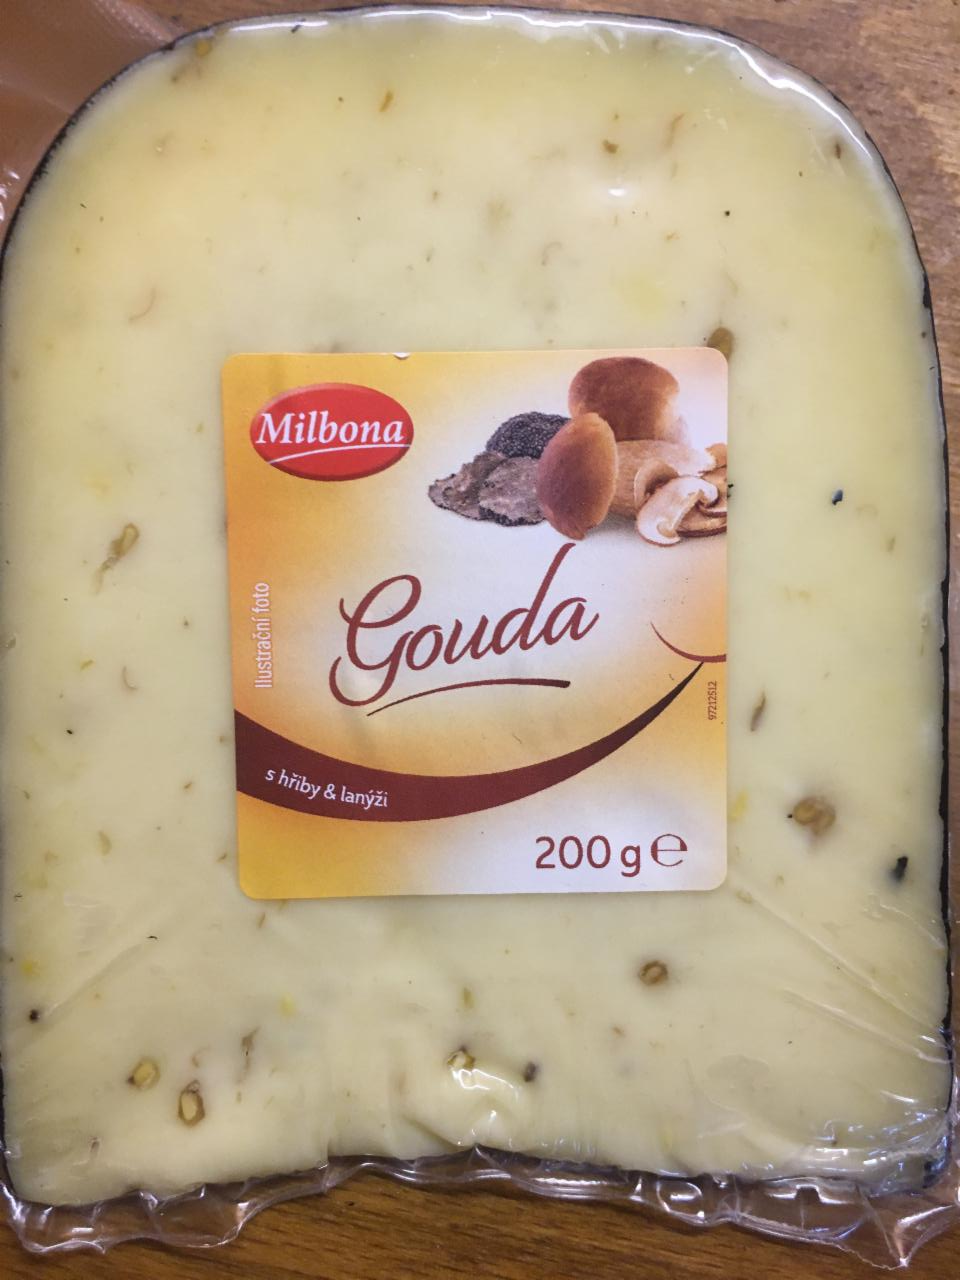 Képek - Milbona gouda sajt szarvasgombával 